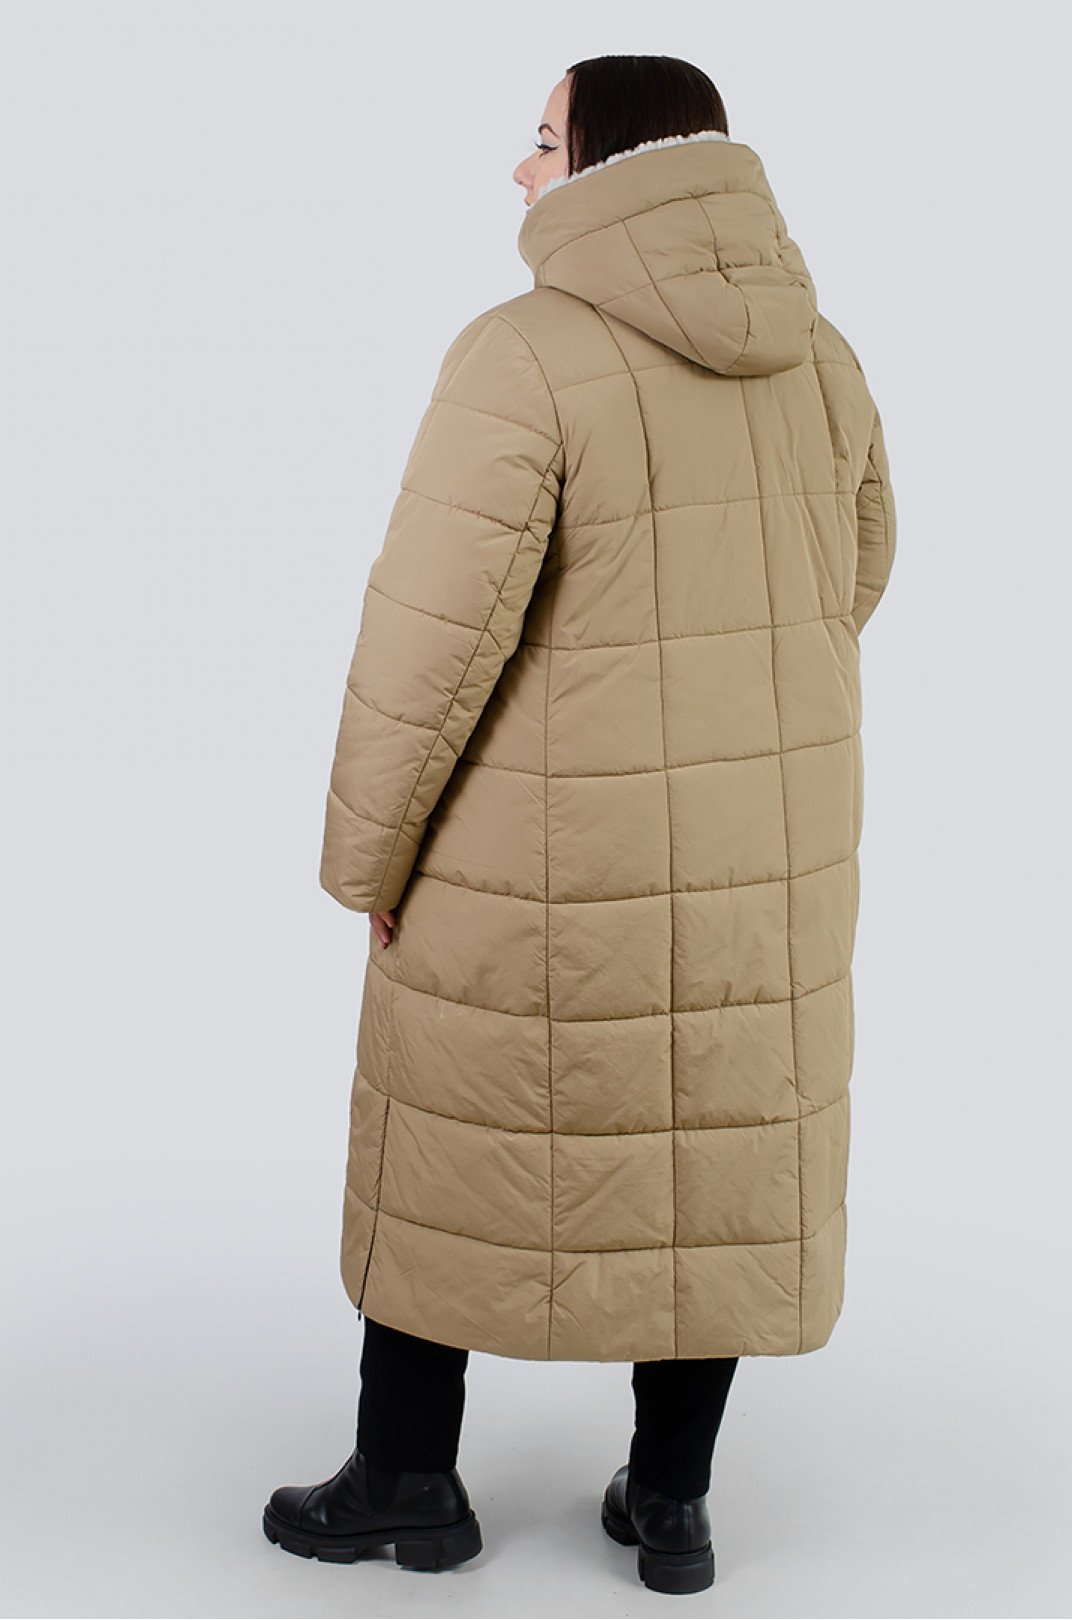 Теплое пальто синтепух с карманами на молниях супер батал